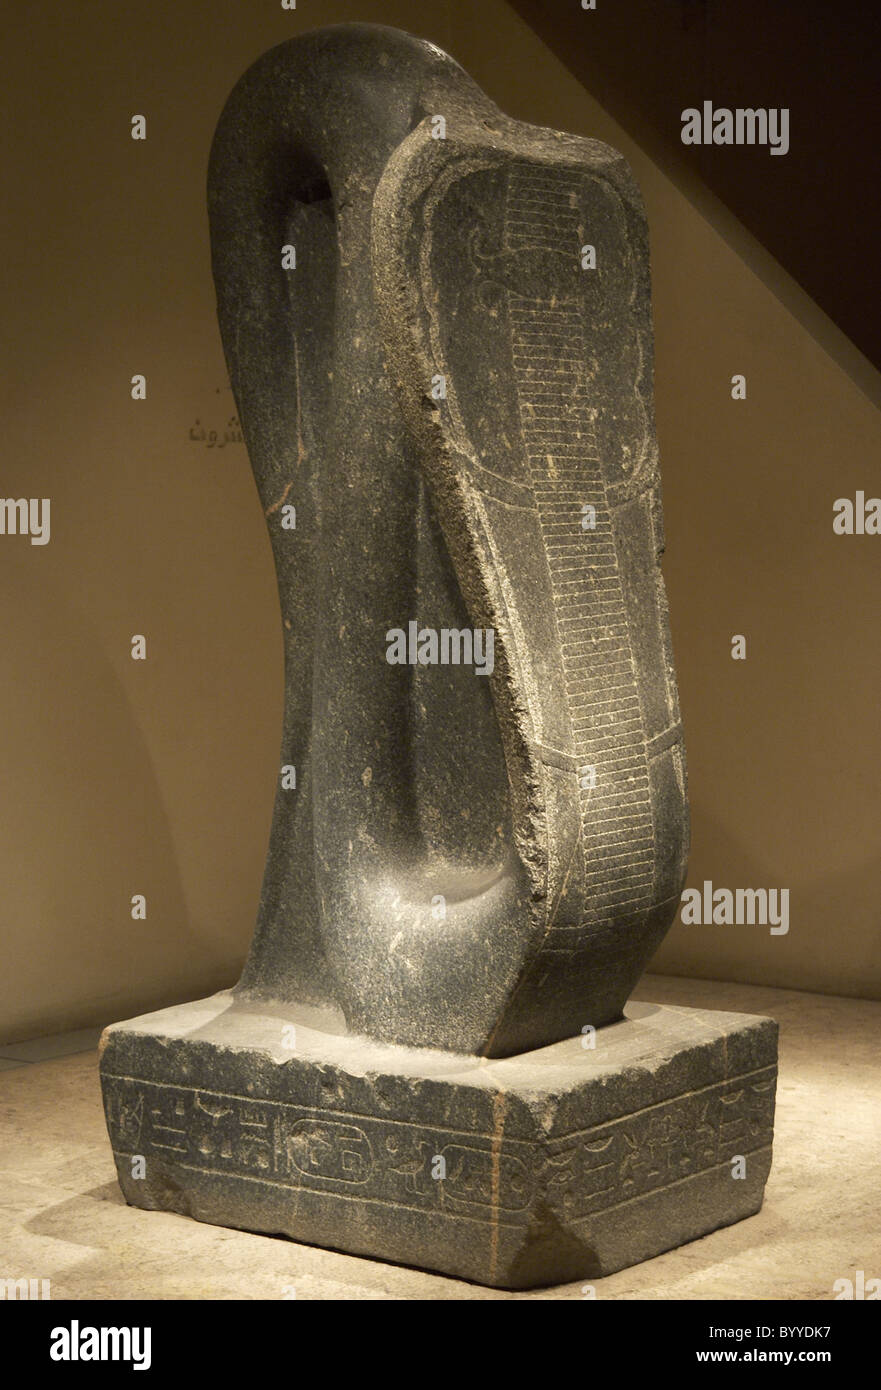 Arte Egizia Cobra di Amon-Ra. Il regno dei faraoni Nubiano. Xxv dinastia. Terzo Periodo Intermedio. Museo di Luxor. L'Egitto. Foto Stock